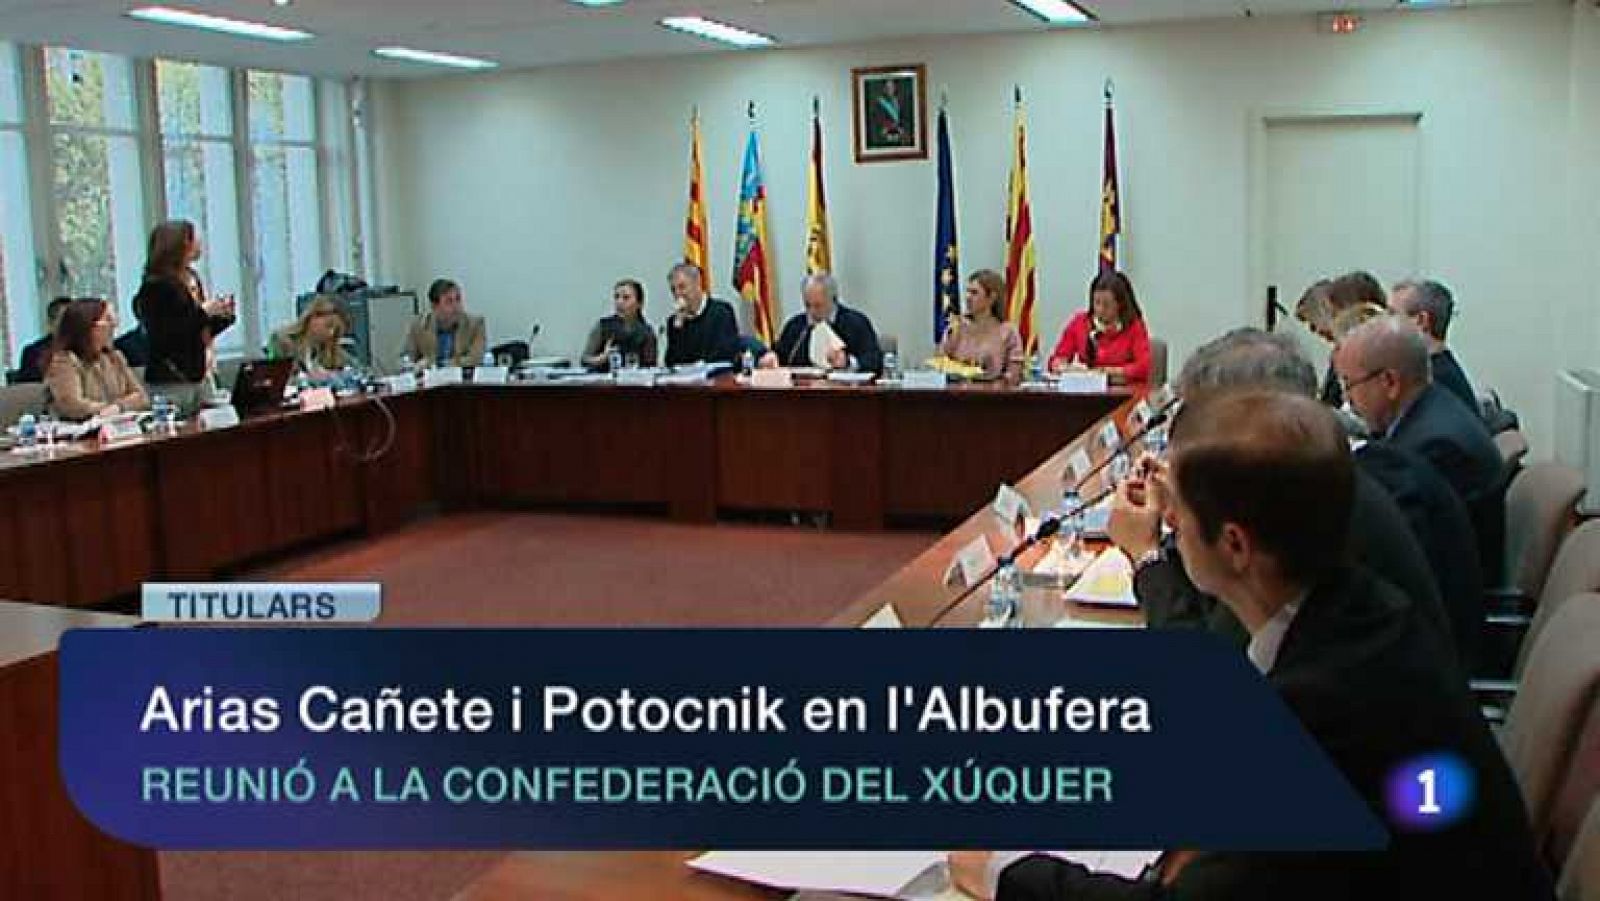 L'informatiu - Comunitat Valenciana: La Comunidad Valenciana en 2' - 06/11/12 | RTVE Play